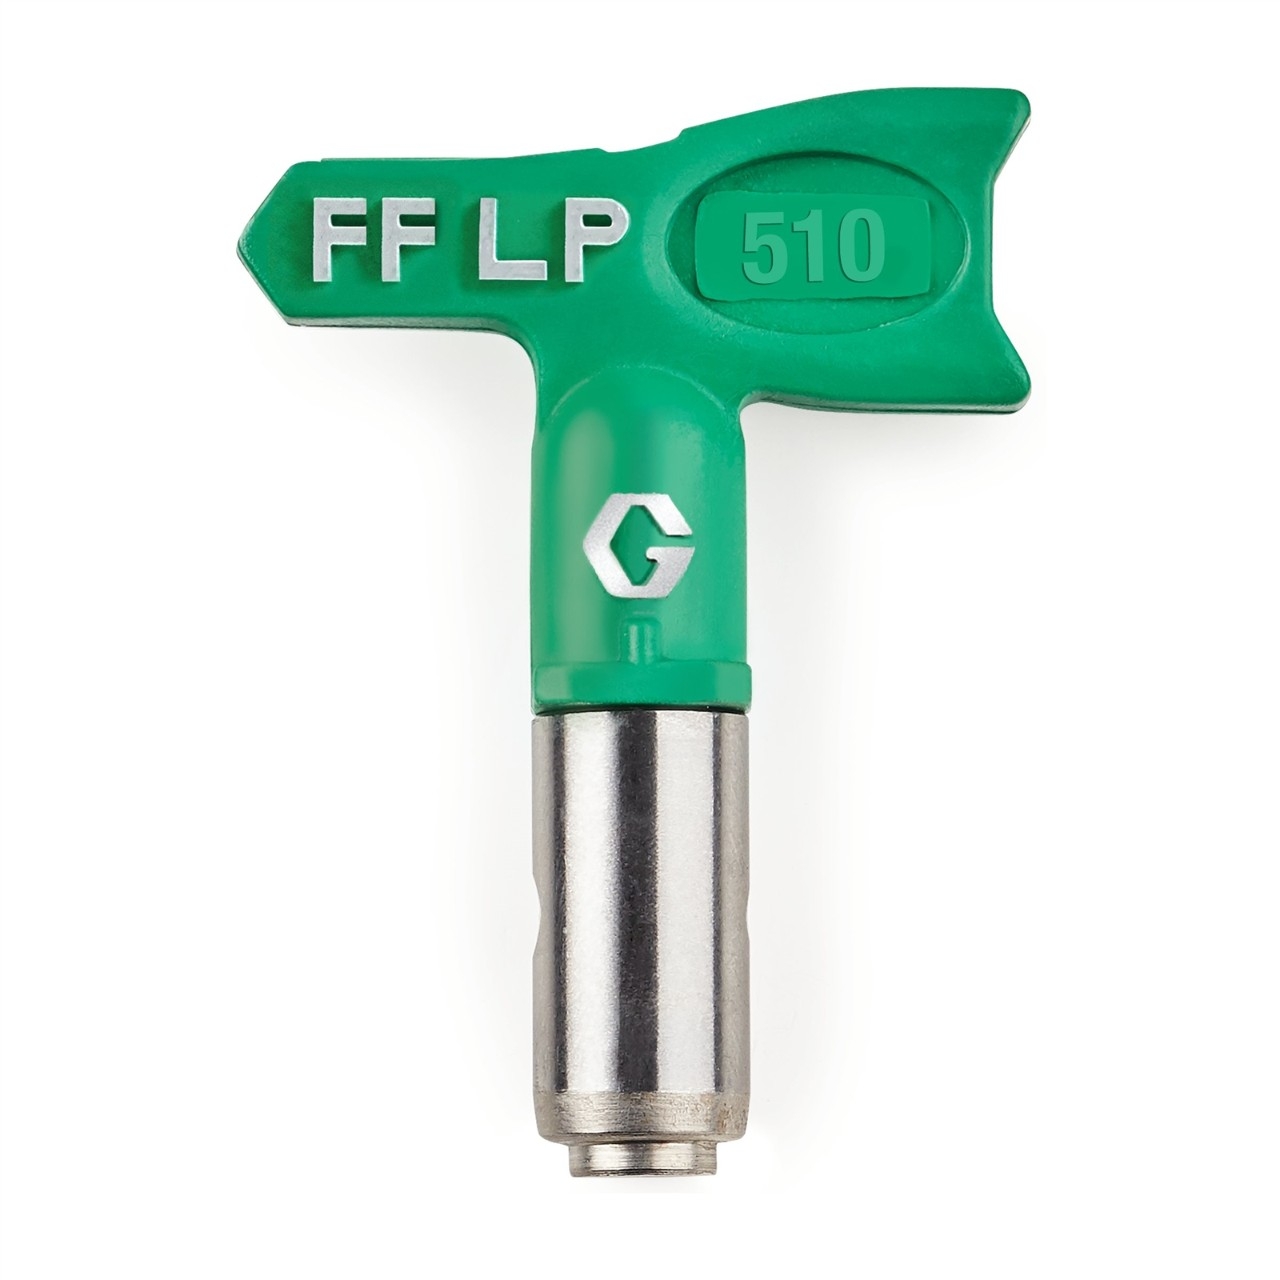  FFLP510 Duză FFLP SwitchTip 510,pentru finisaj fin la presiune scăzută, compatibilă cu RAC X.jpeg